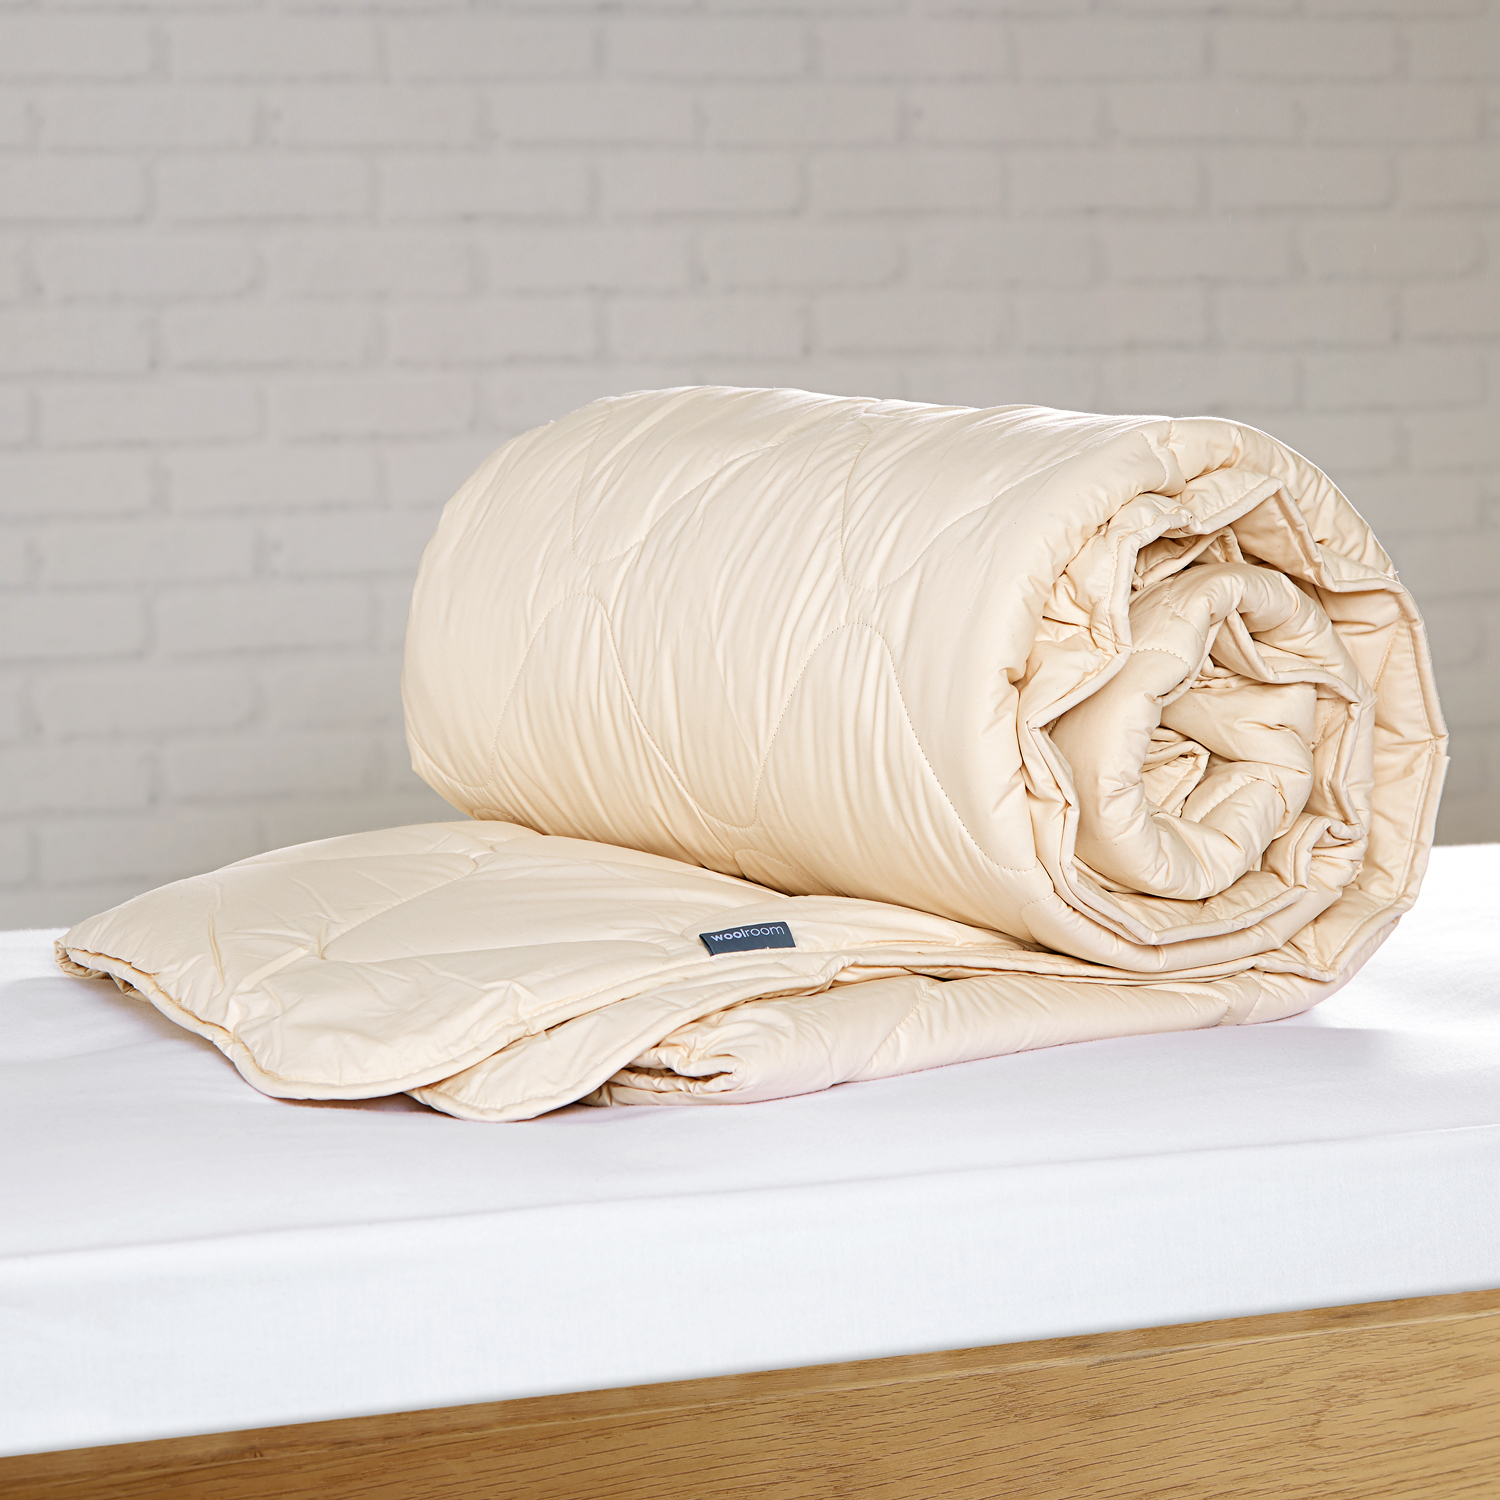 Deluxe Washable Wool Comforter - Warm, Wool Comforters